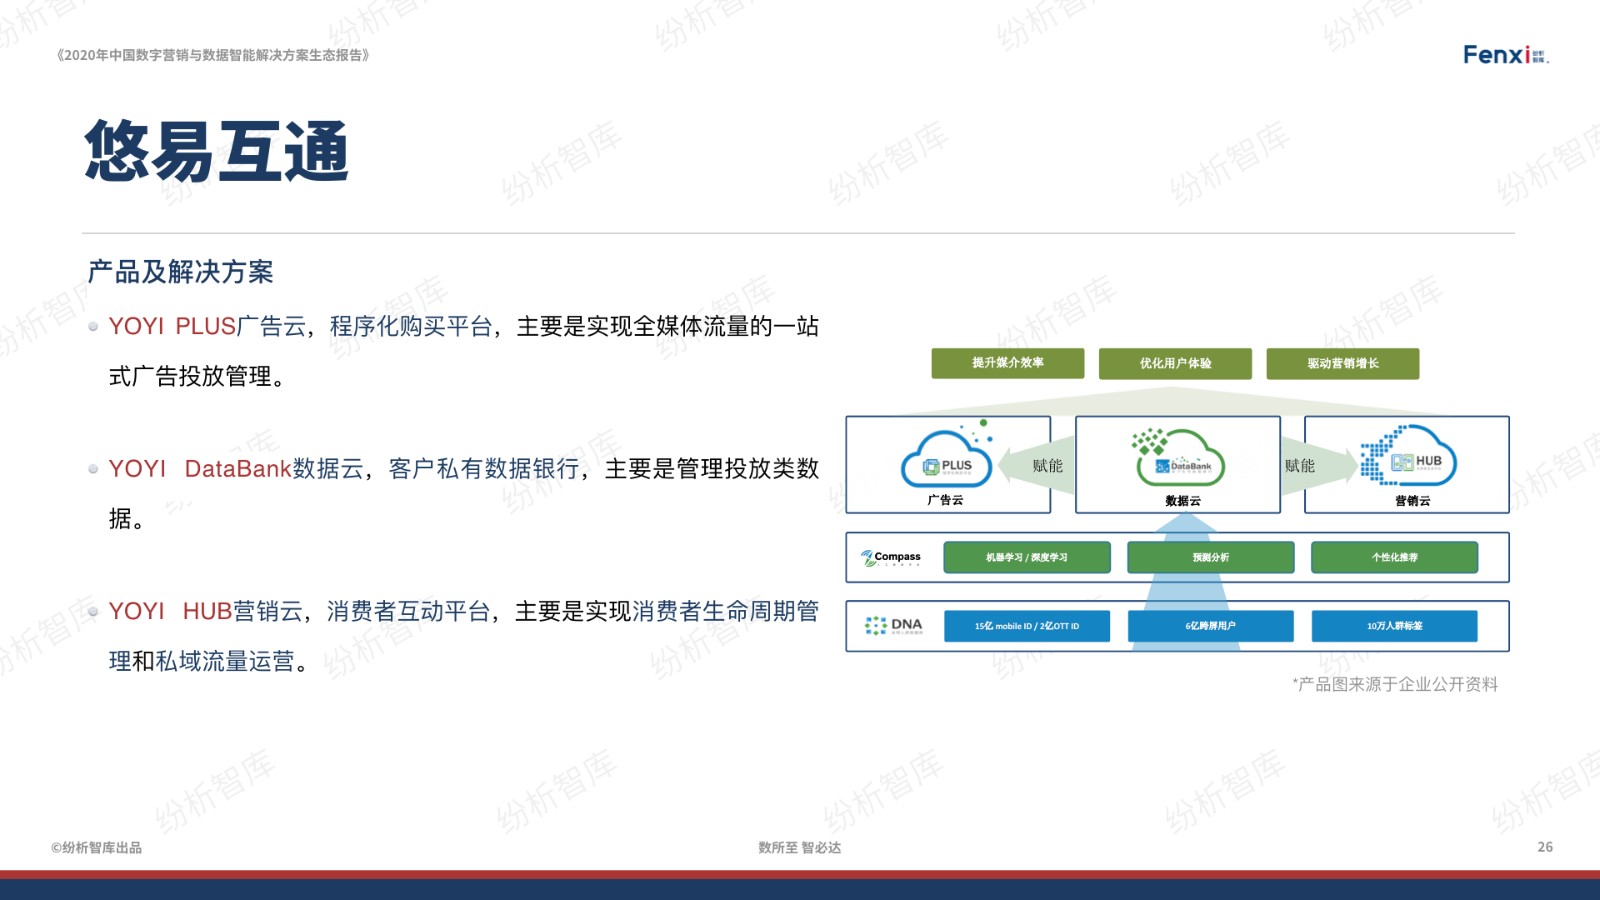 【V9】《2020年中国数字营销与数据智能解决方案生态图报告》0106.026.jpeg